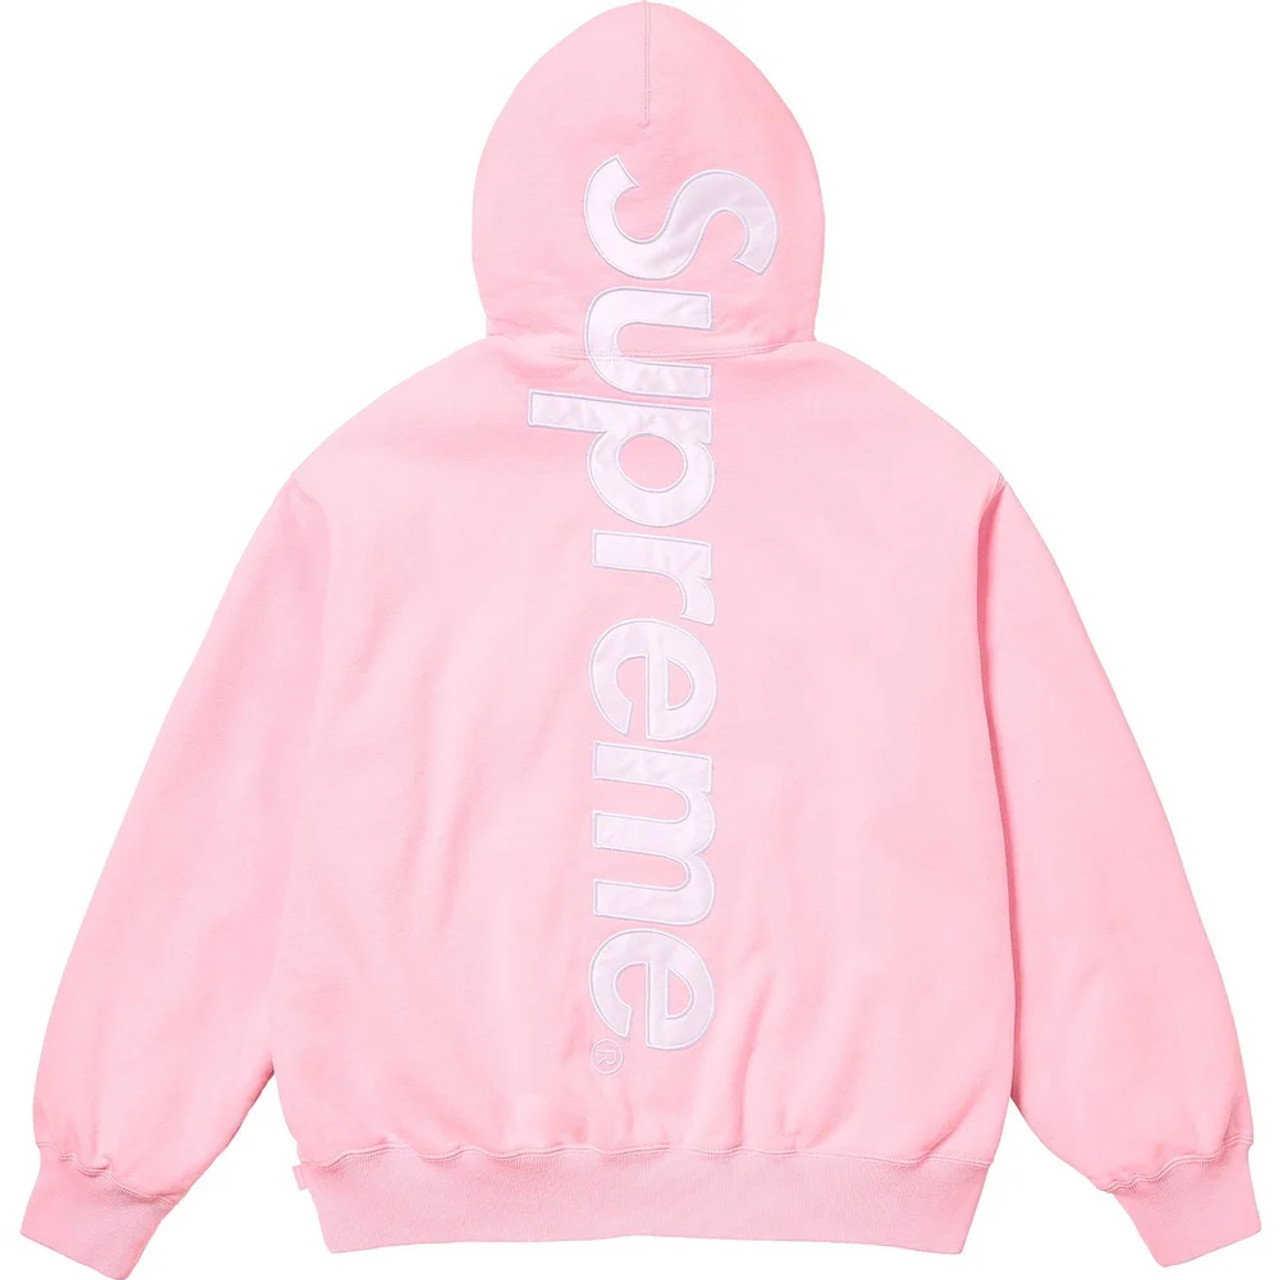 Satin Applique Hooded Sweatshirt S Pink-